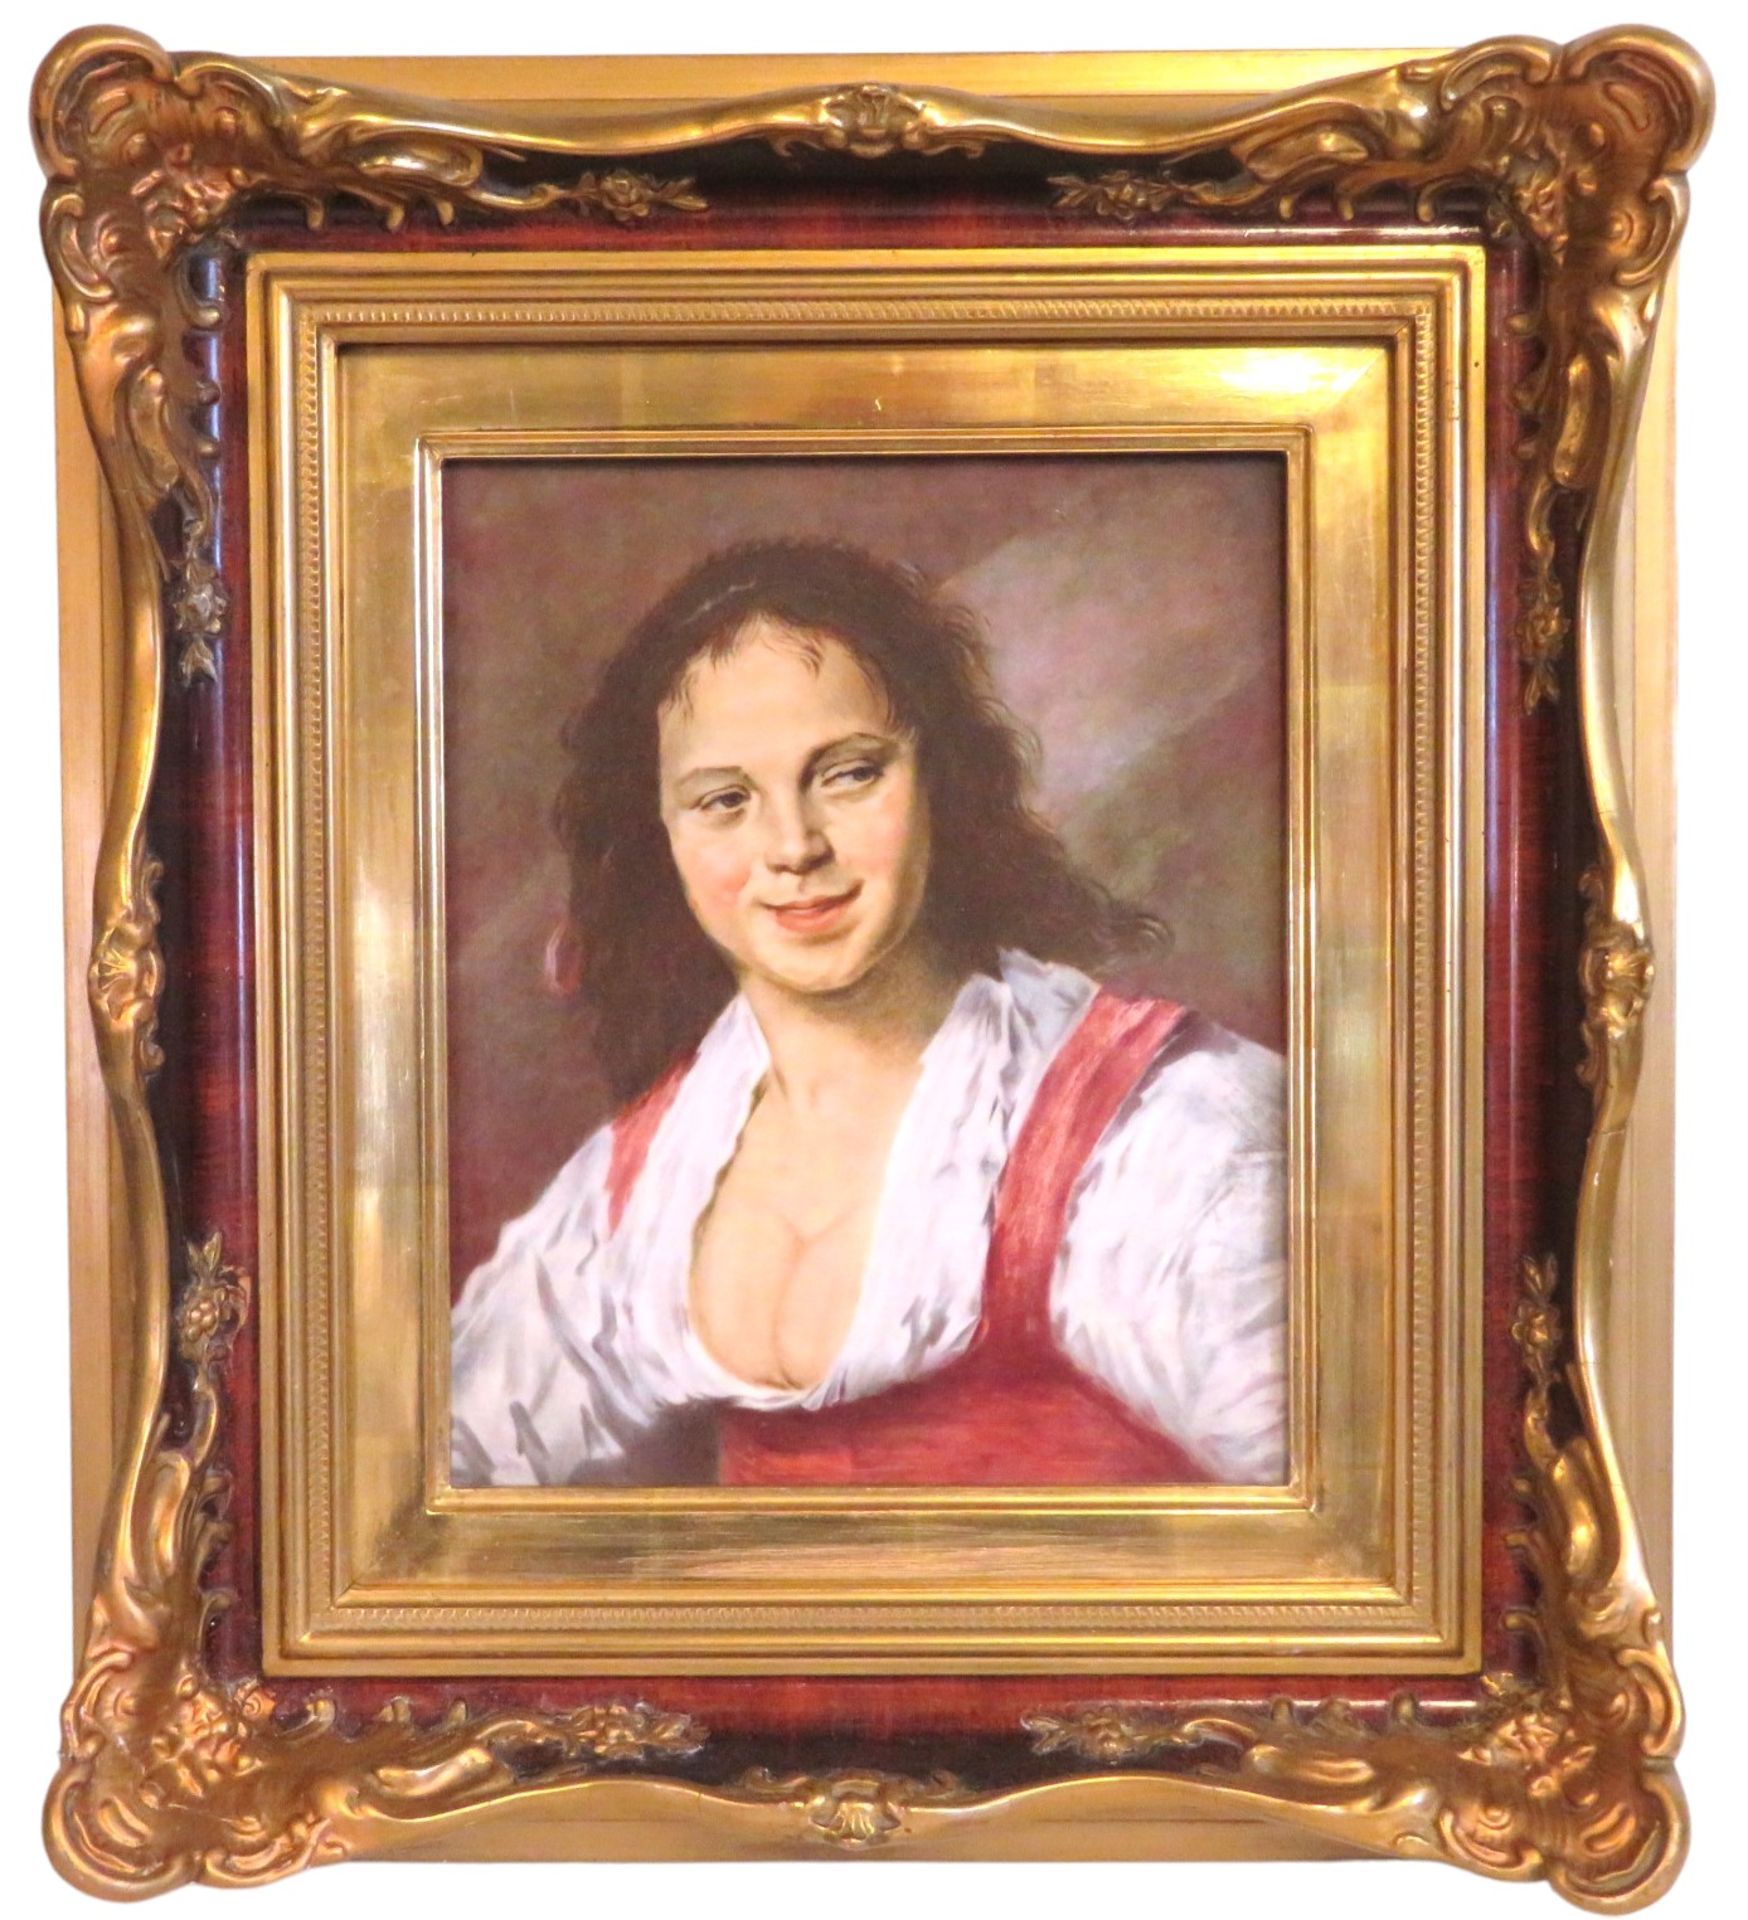 Porzellanmalerei, Rosenthal, Zigeunermädchen von Frans Hals, 30,5 x 25,5 cm, R. [53 x 46 cm] - Bild 2 aus 3